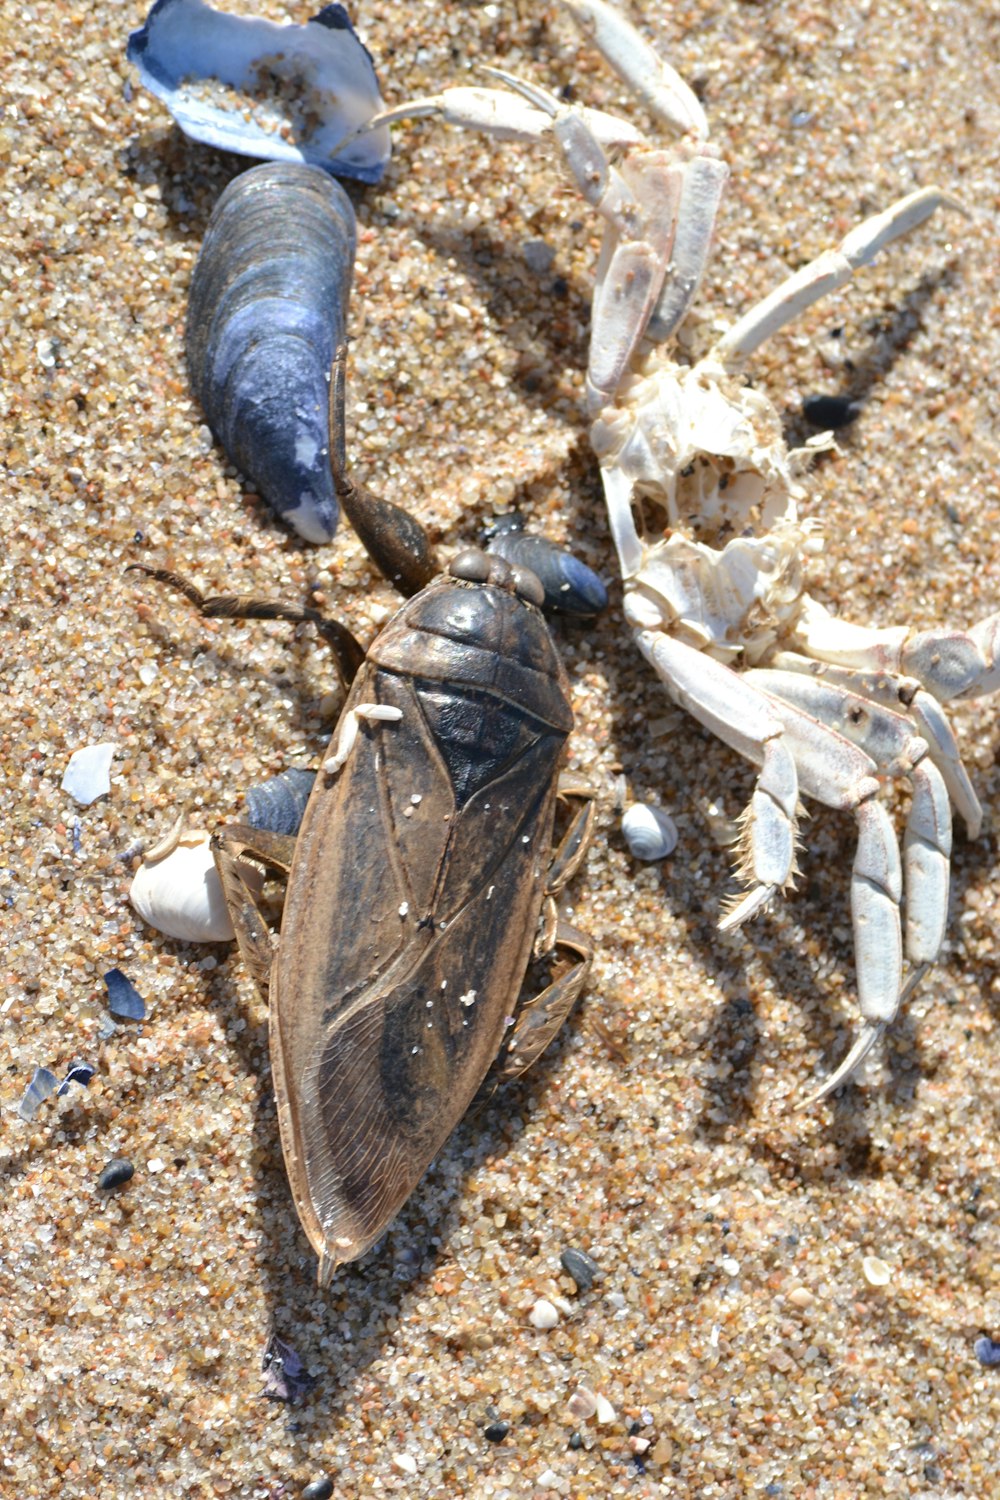 a group of dead bugs on a sandy beach